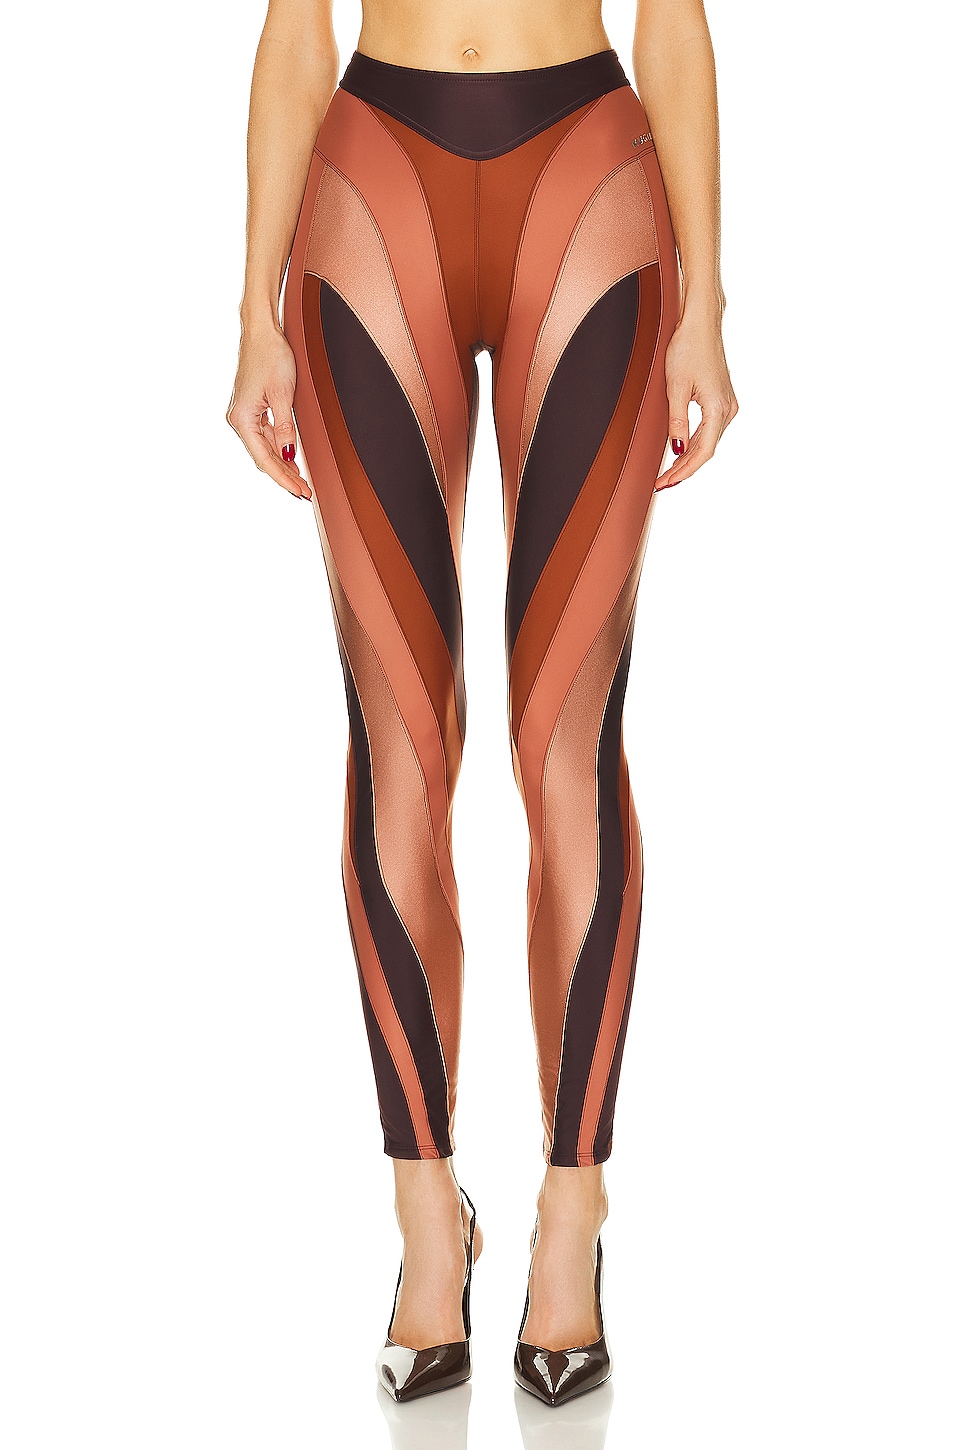 Image 1 of Mugler Illusion Legging in Dark Raisin, Sienna, & Dark Blush